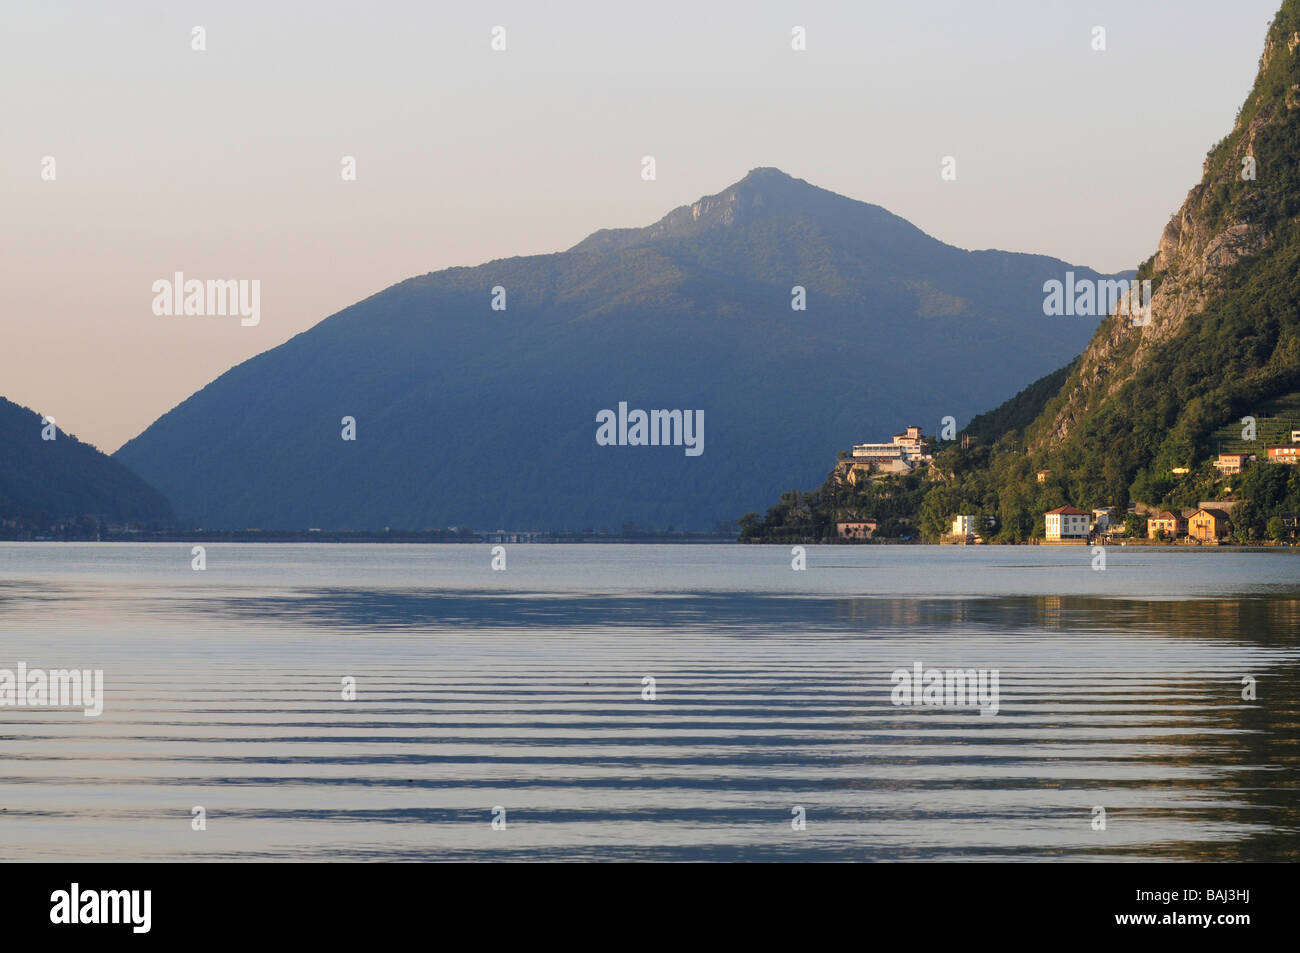 Le lac de Lugano, un monument de la langue italienne Ticino (Tessin) canton de Suisse. Banque D'Images